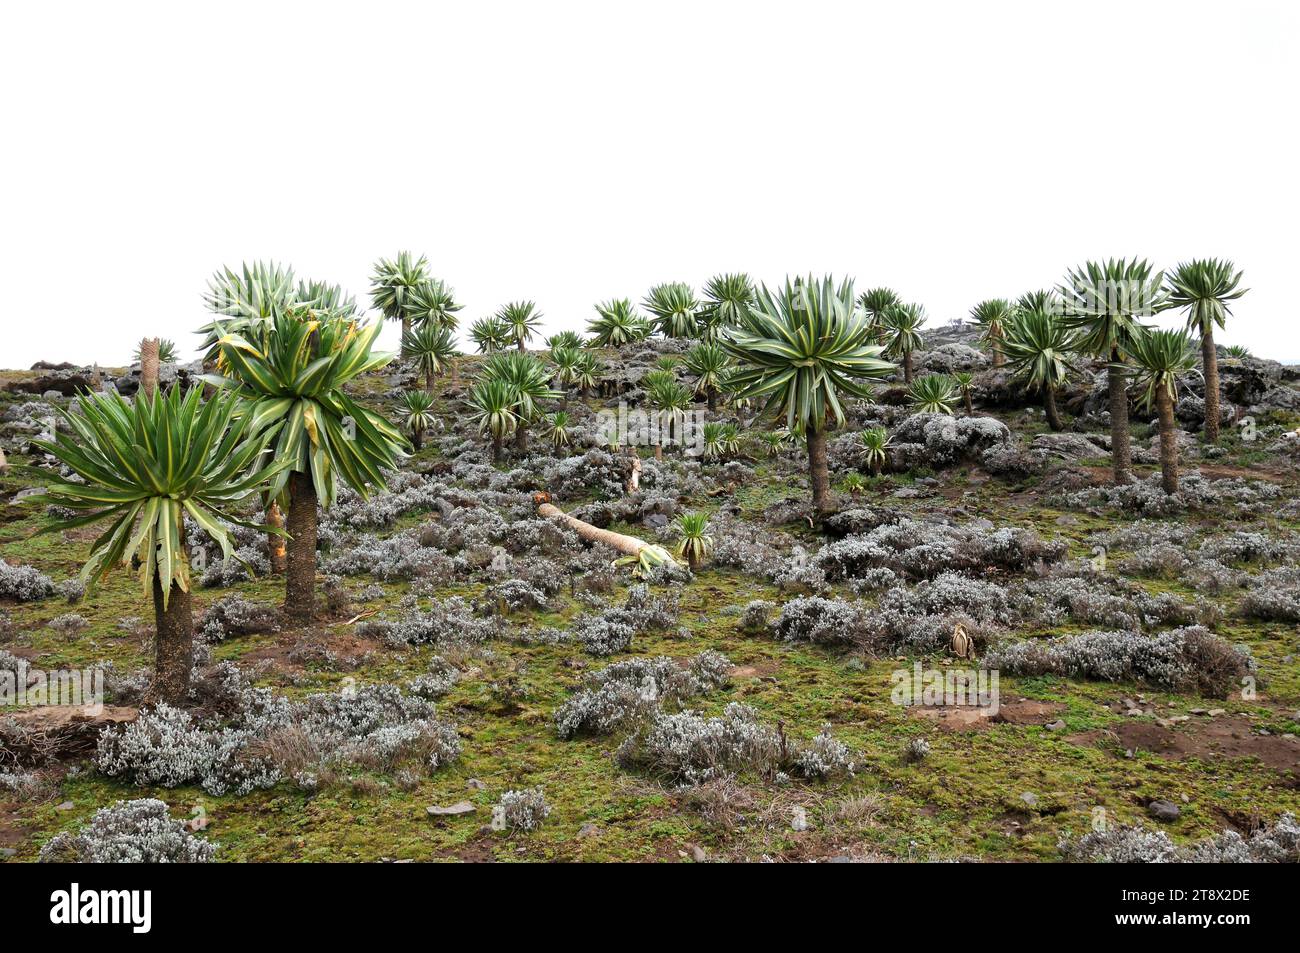 Giant lobelia (Lobelia rhynchopetalum) is a plant endemic to Ethiopia Mountains. This photo was taken in Bale Mountains National Park, Ethiopia. Stock Photo